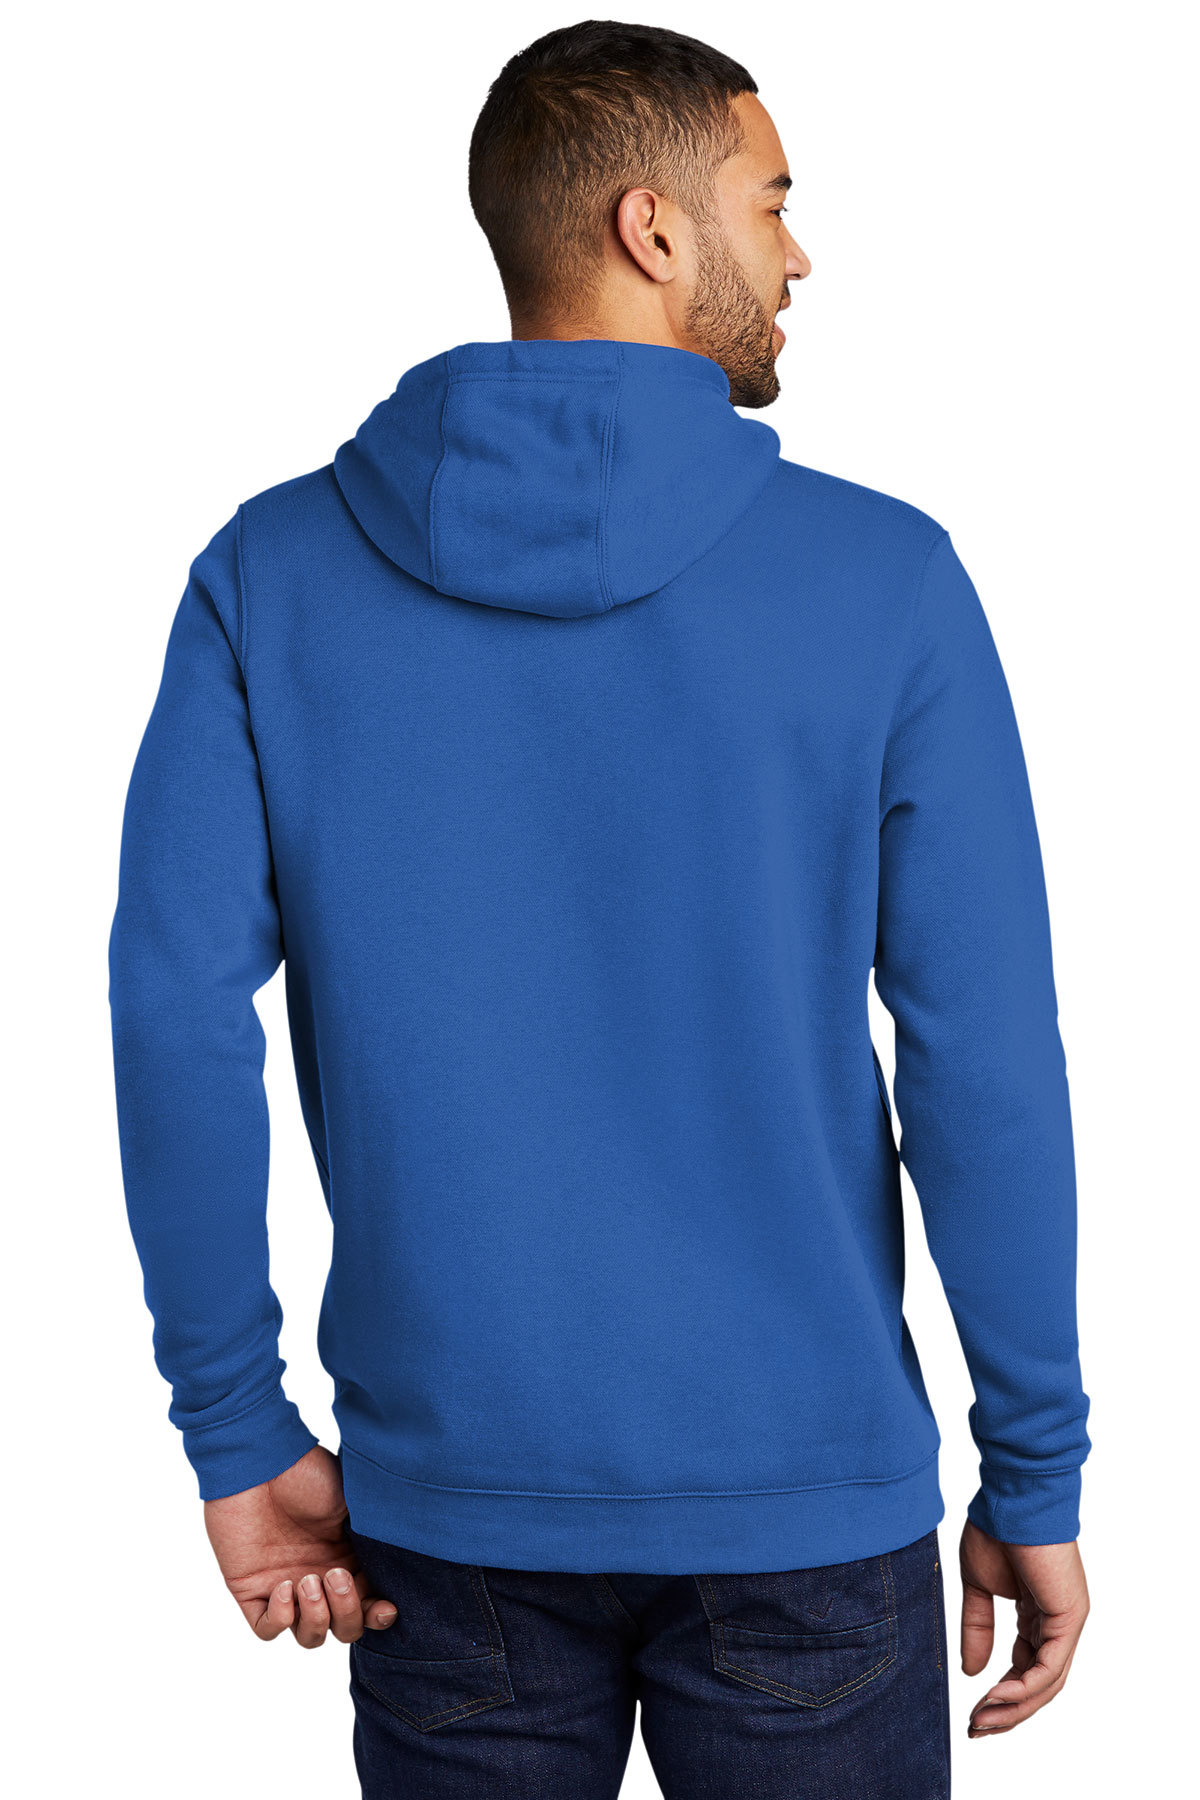 Nike Club Fleece Pullover Hoodie | Product | SanMar